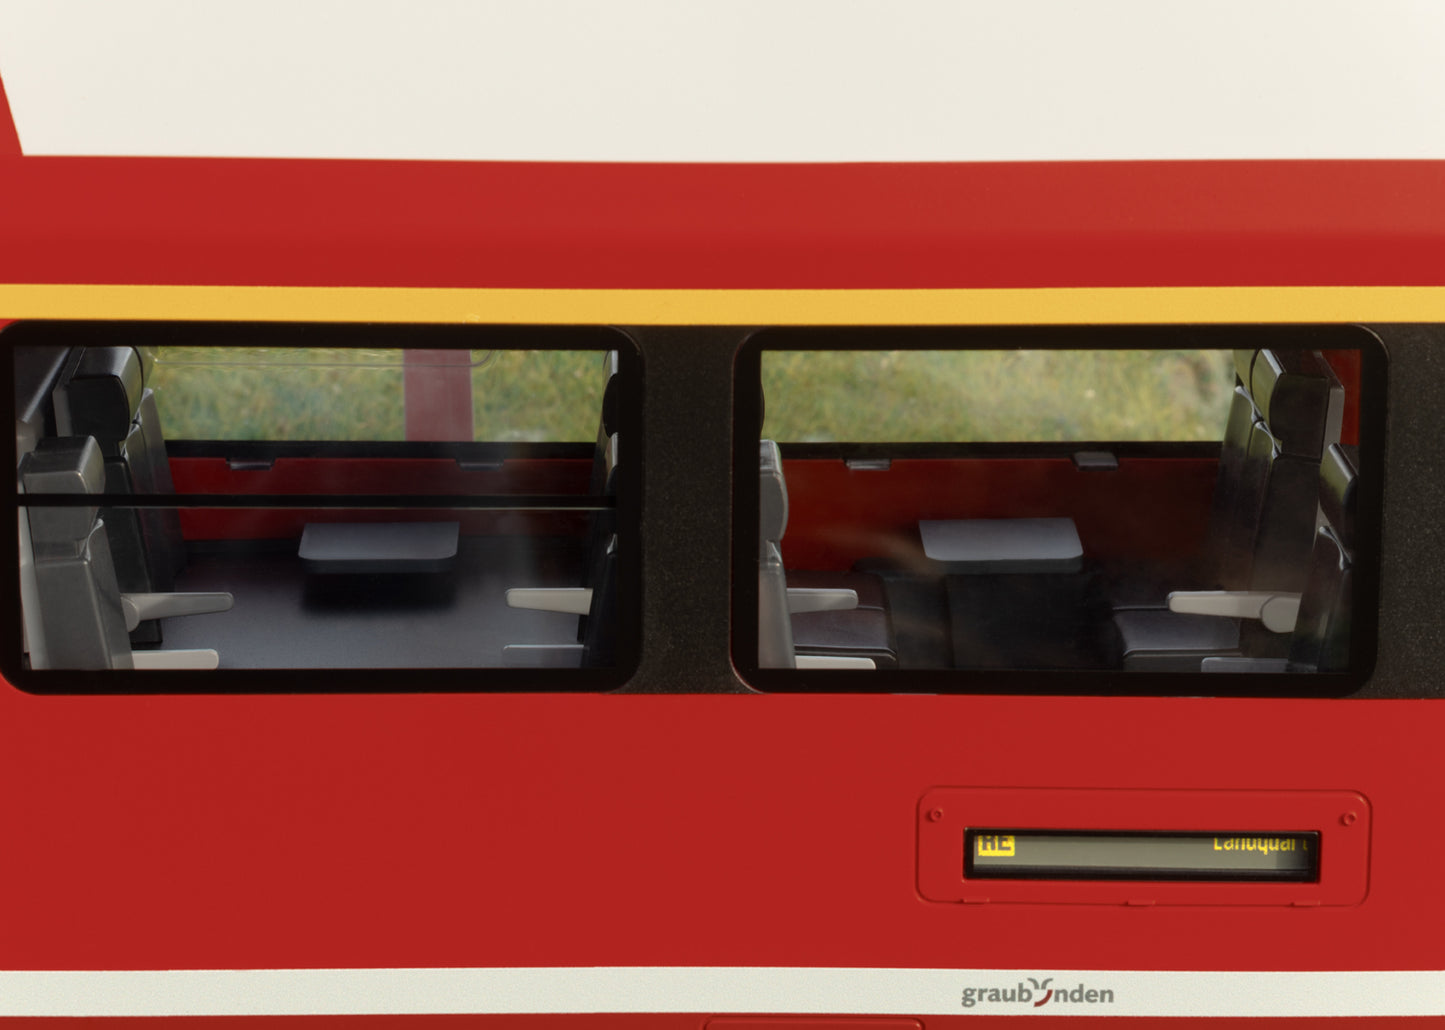 LGB G 23100 RhB Capricorn Rail Car  E. VI 2023 New Item 